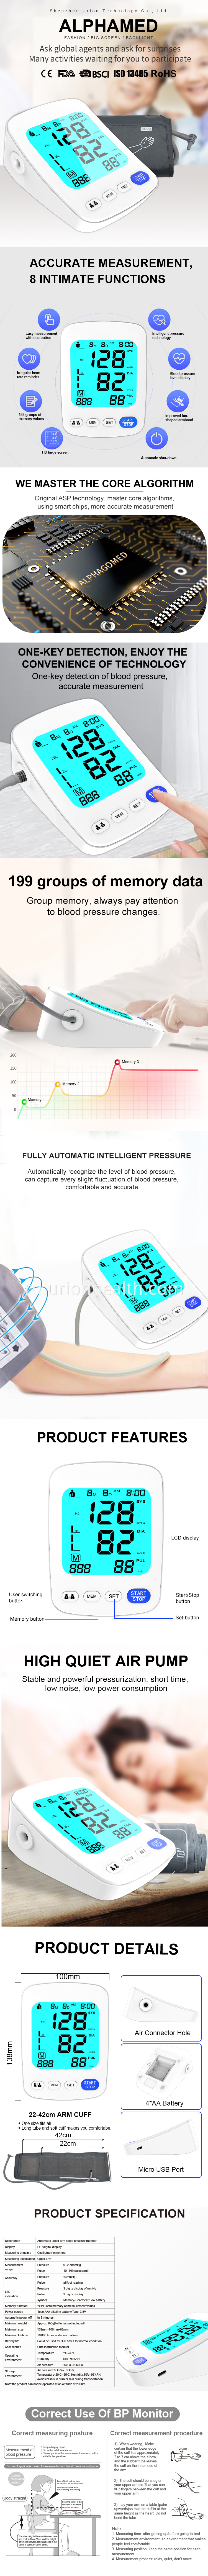 omron blood pressure machine